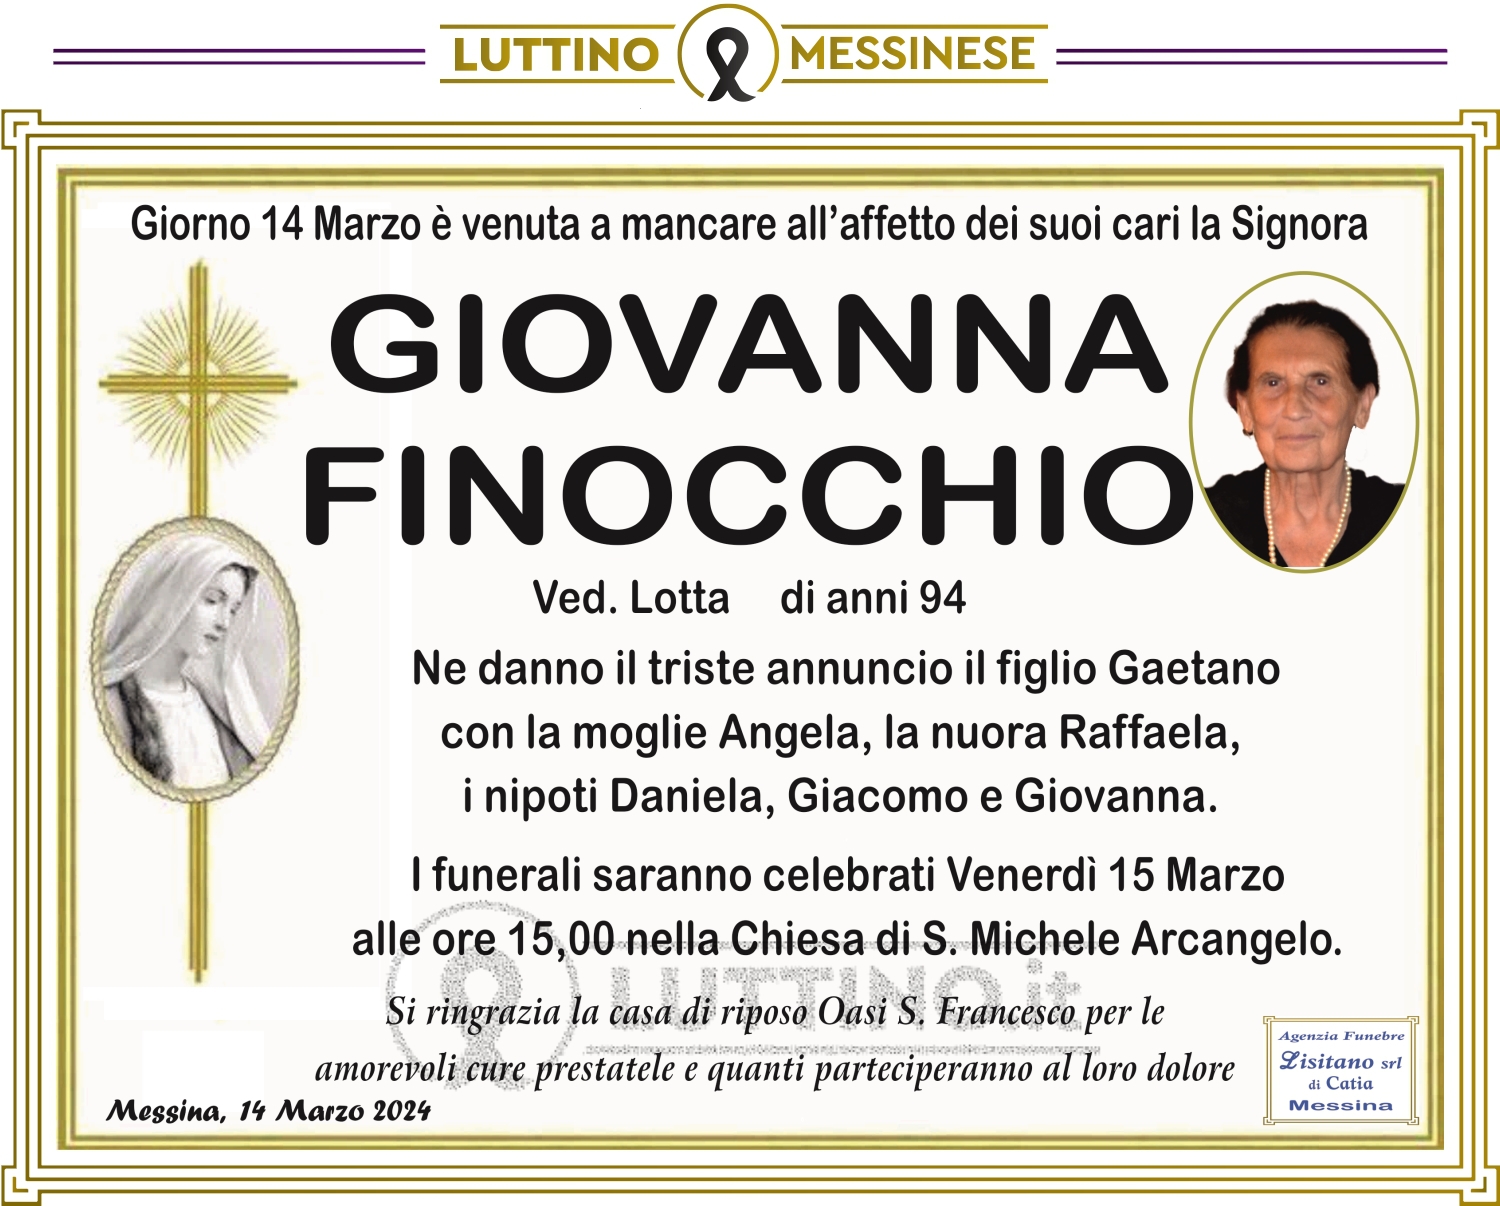 Giovanna Finocchio